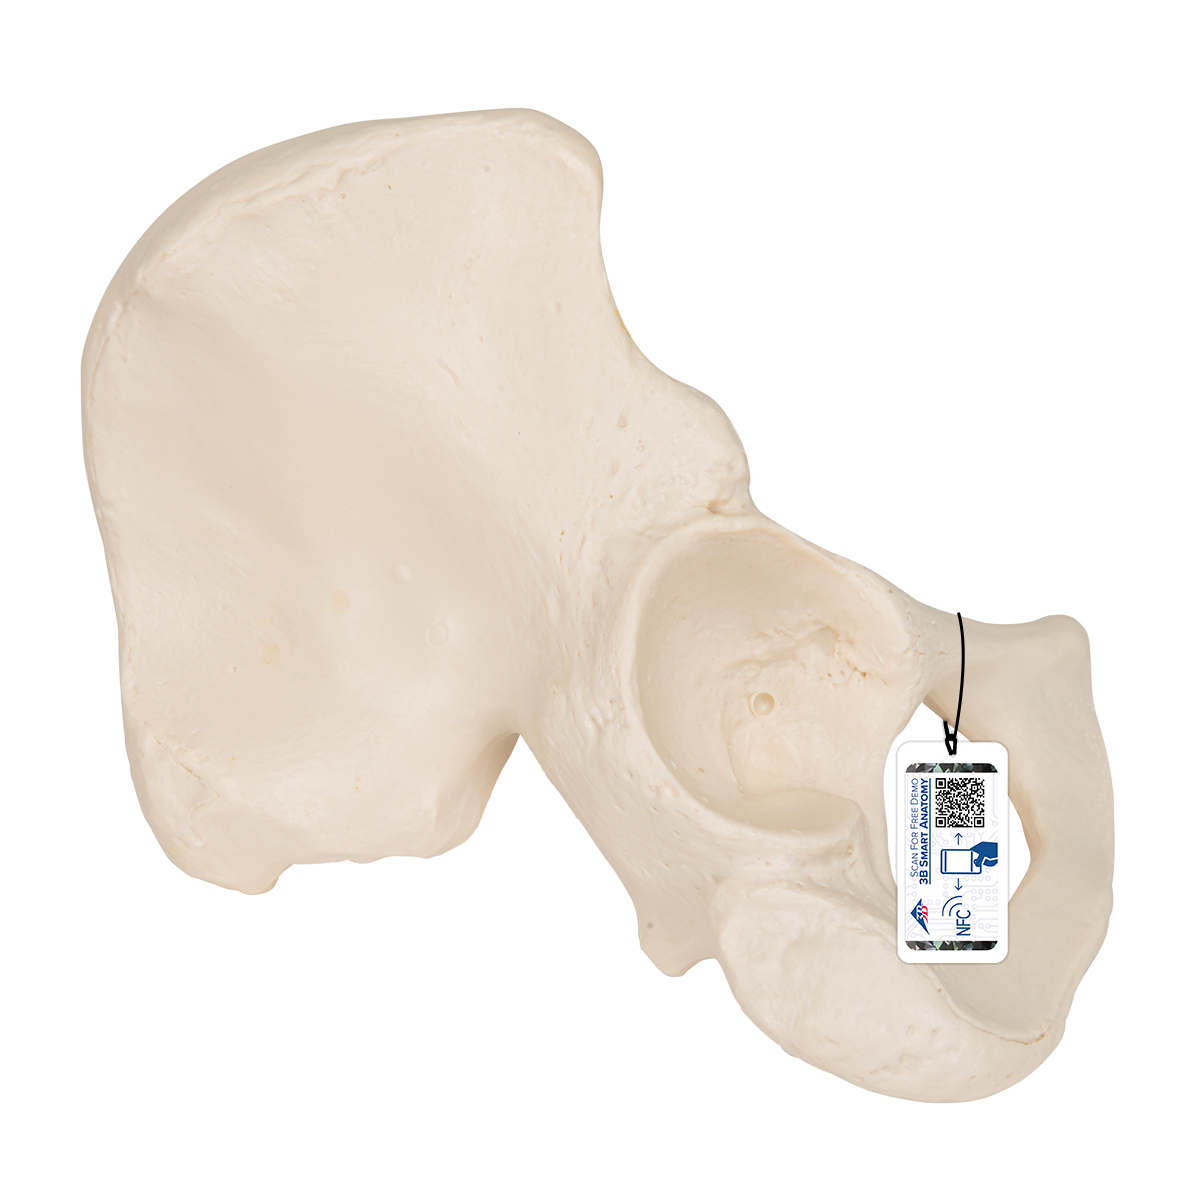 Hüftbein Knochen Modell - 3B Smart Anatomy, Bestellnummer 1019365, A35/5, 3B Scientific